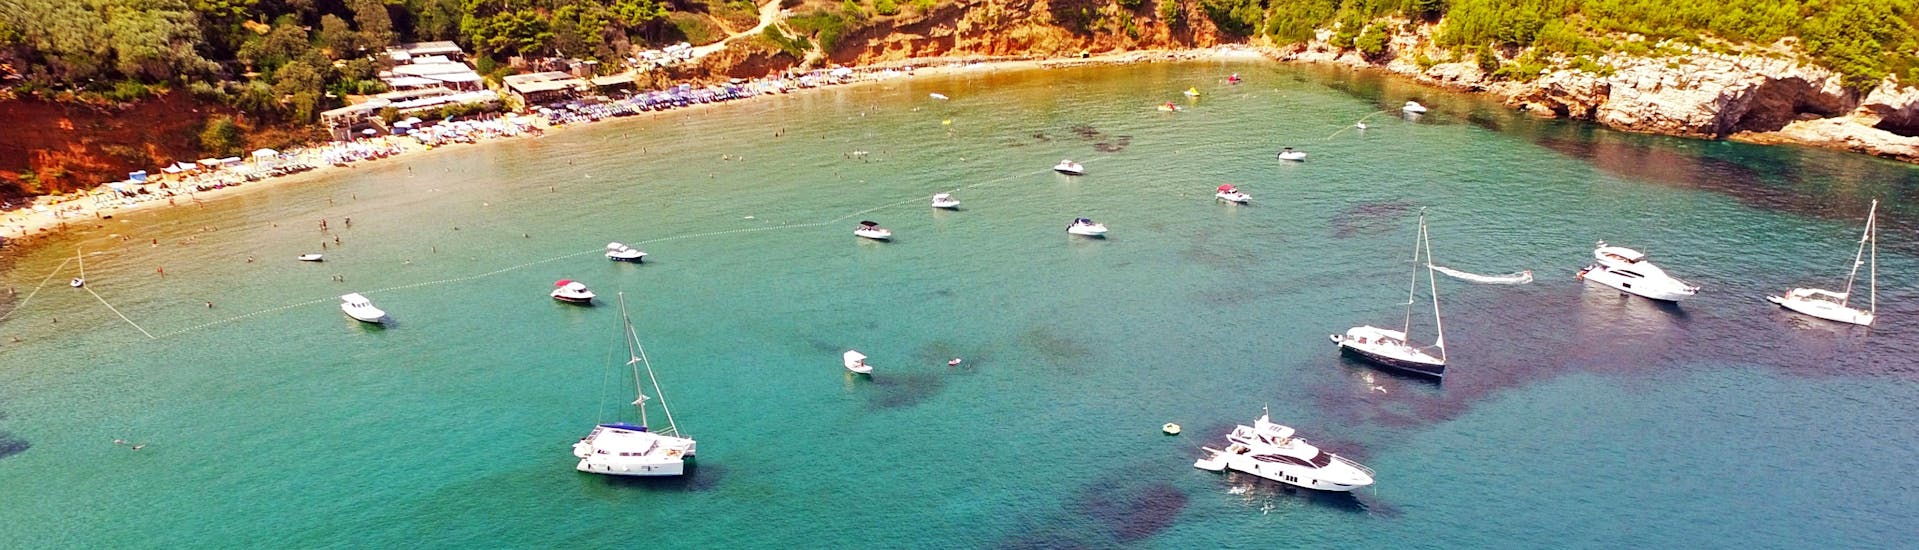 Vue sur la baie lors de la balade privée d'une journée en bateau de Dubrovnik aux îles Élaphites organisée par Snooky Tours Dubrovnik.